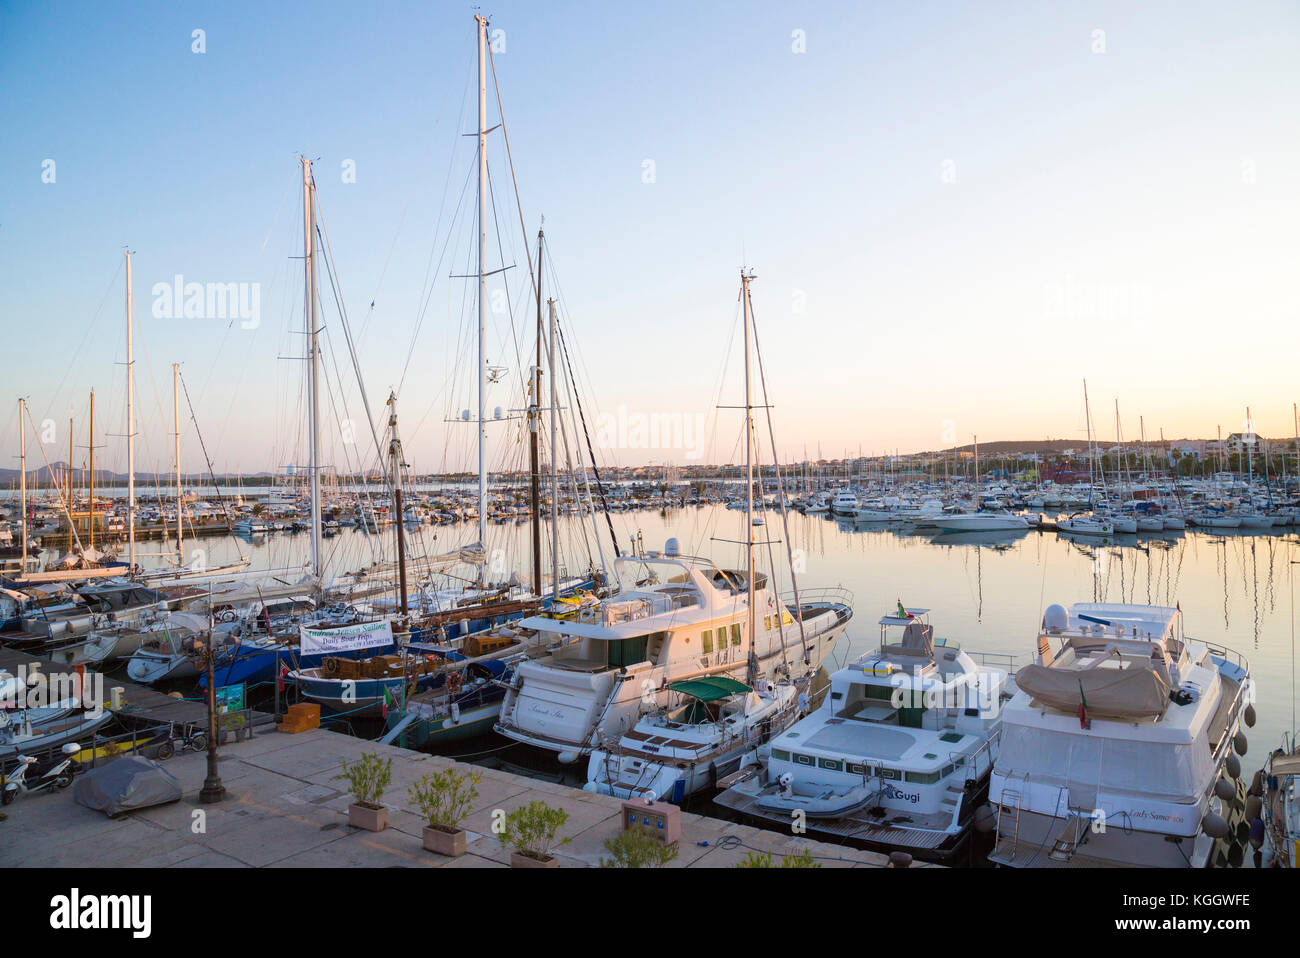 Algheros Yachthafen von einem erhöhten Ansicht mit angelegten Yachten in ruhigen Gewässern Stockfoto